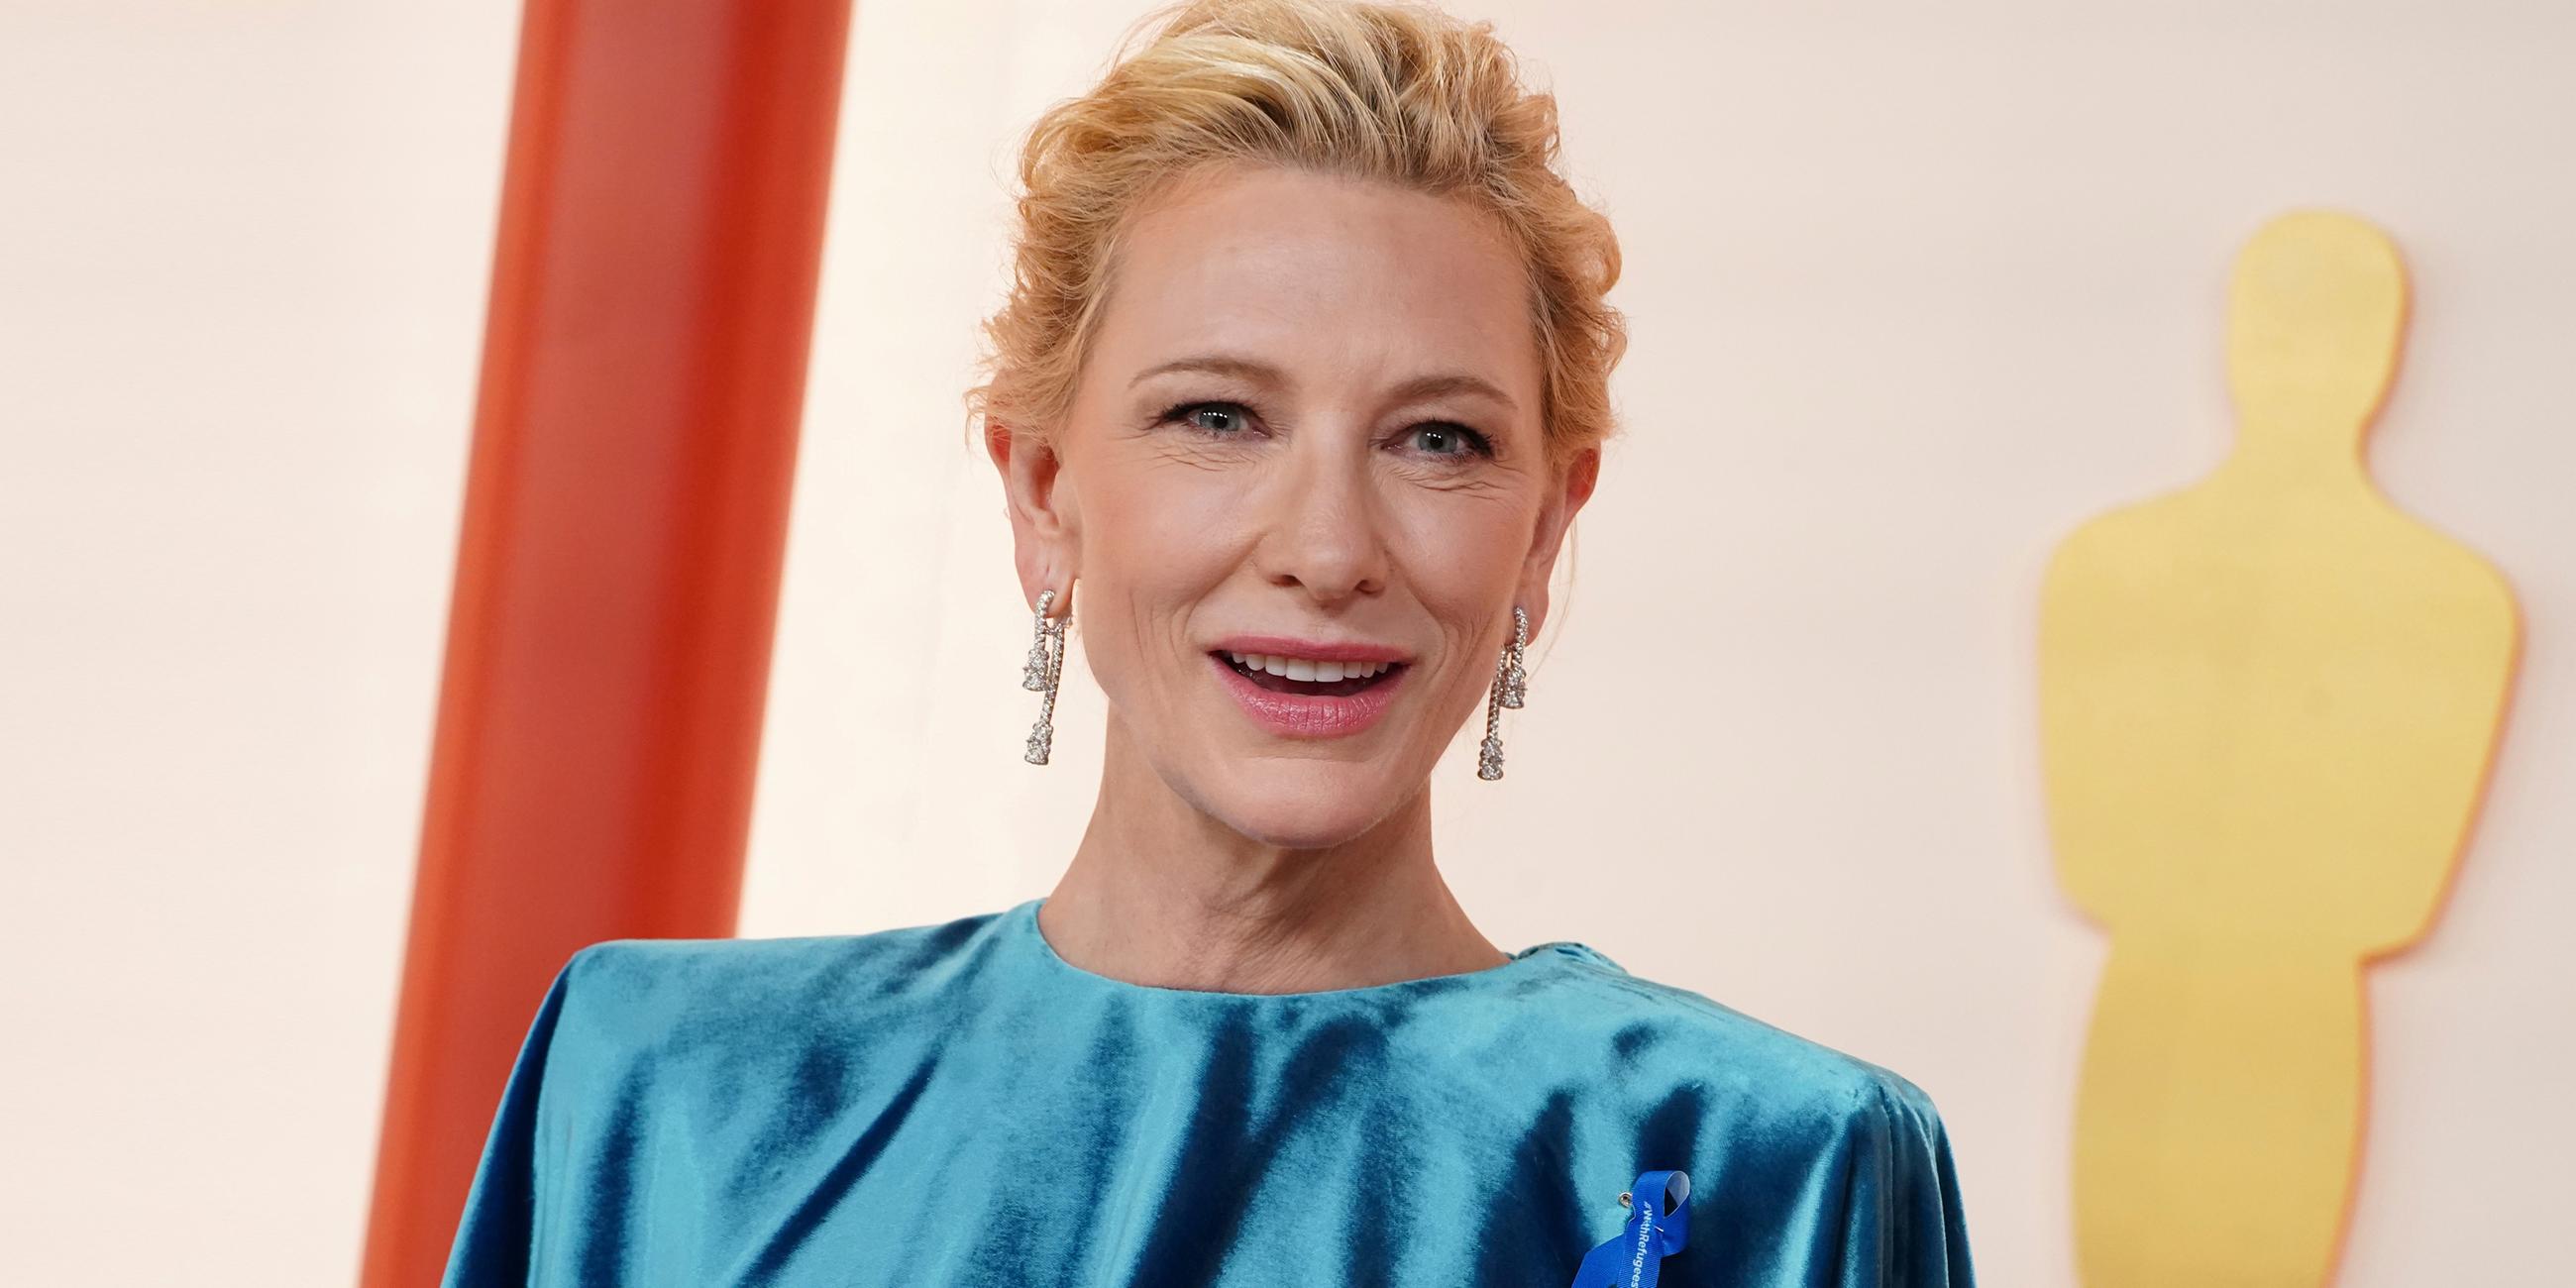 Schauspielerin Cate Blanchett trägt eine blaue Schleife an ihrer Bluse